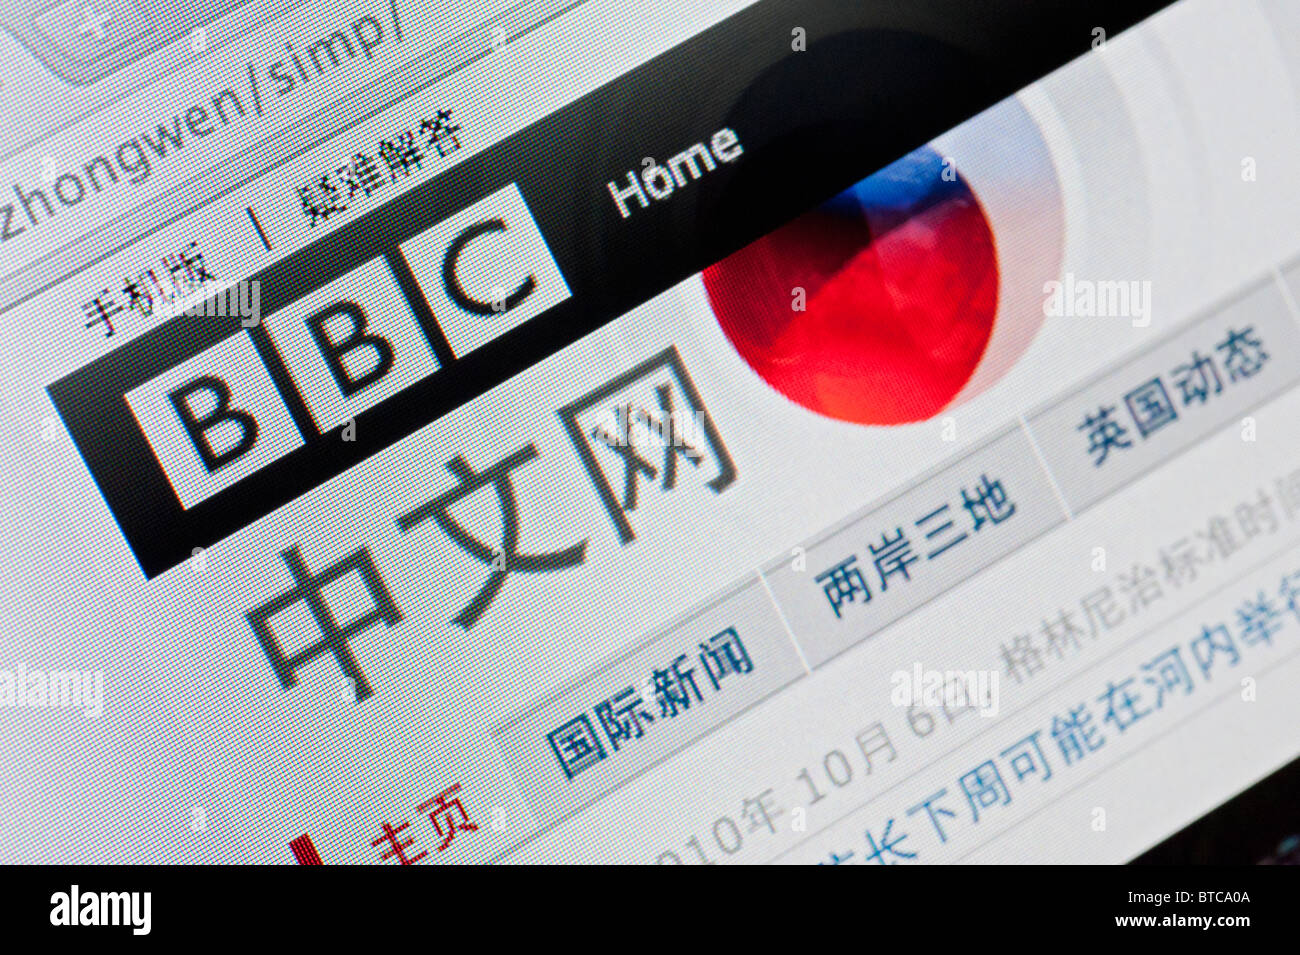 Détail de capture d'écran du site de la BBC News Chinese television channel homepage Banque D'Images